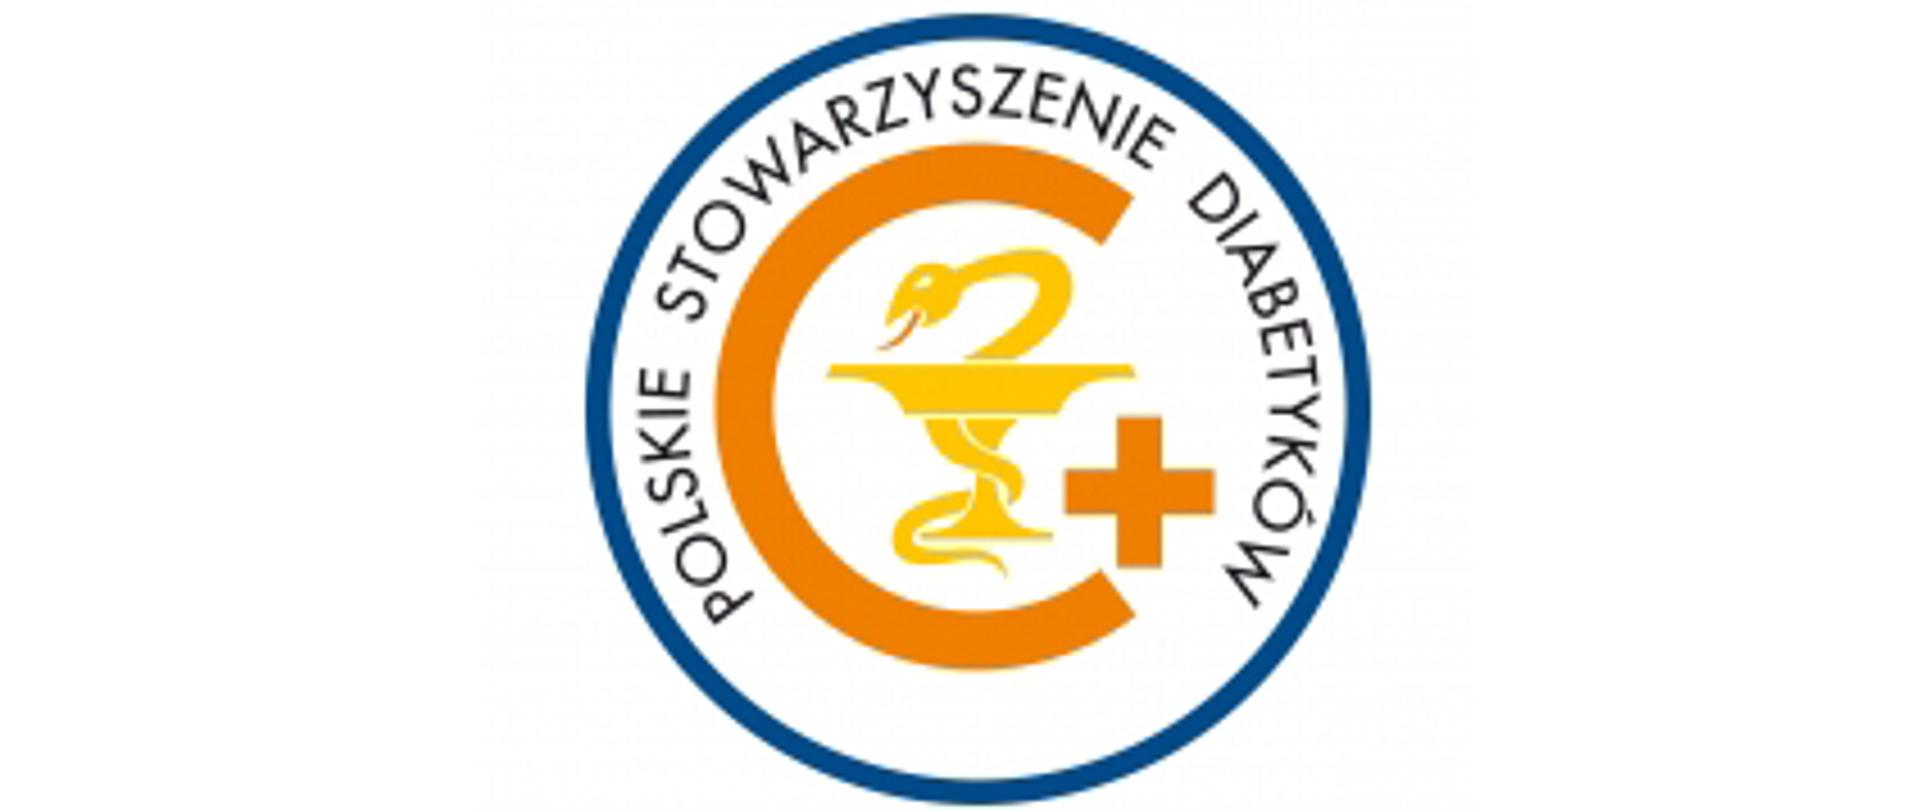 Polskie Stowarzyszenie Diabetyków - logo